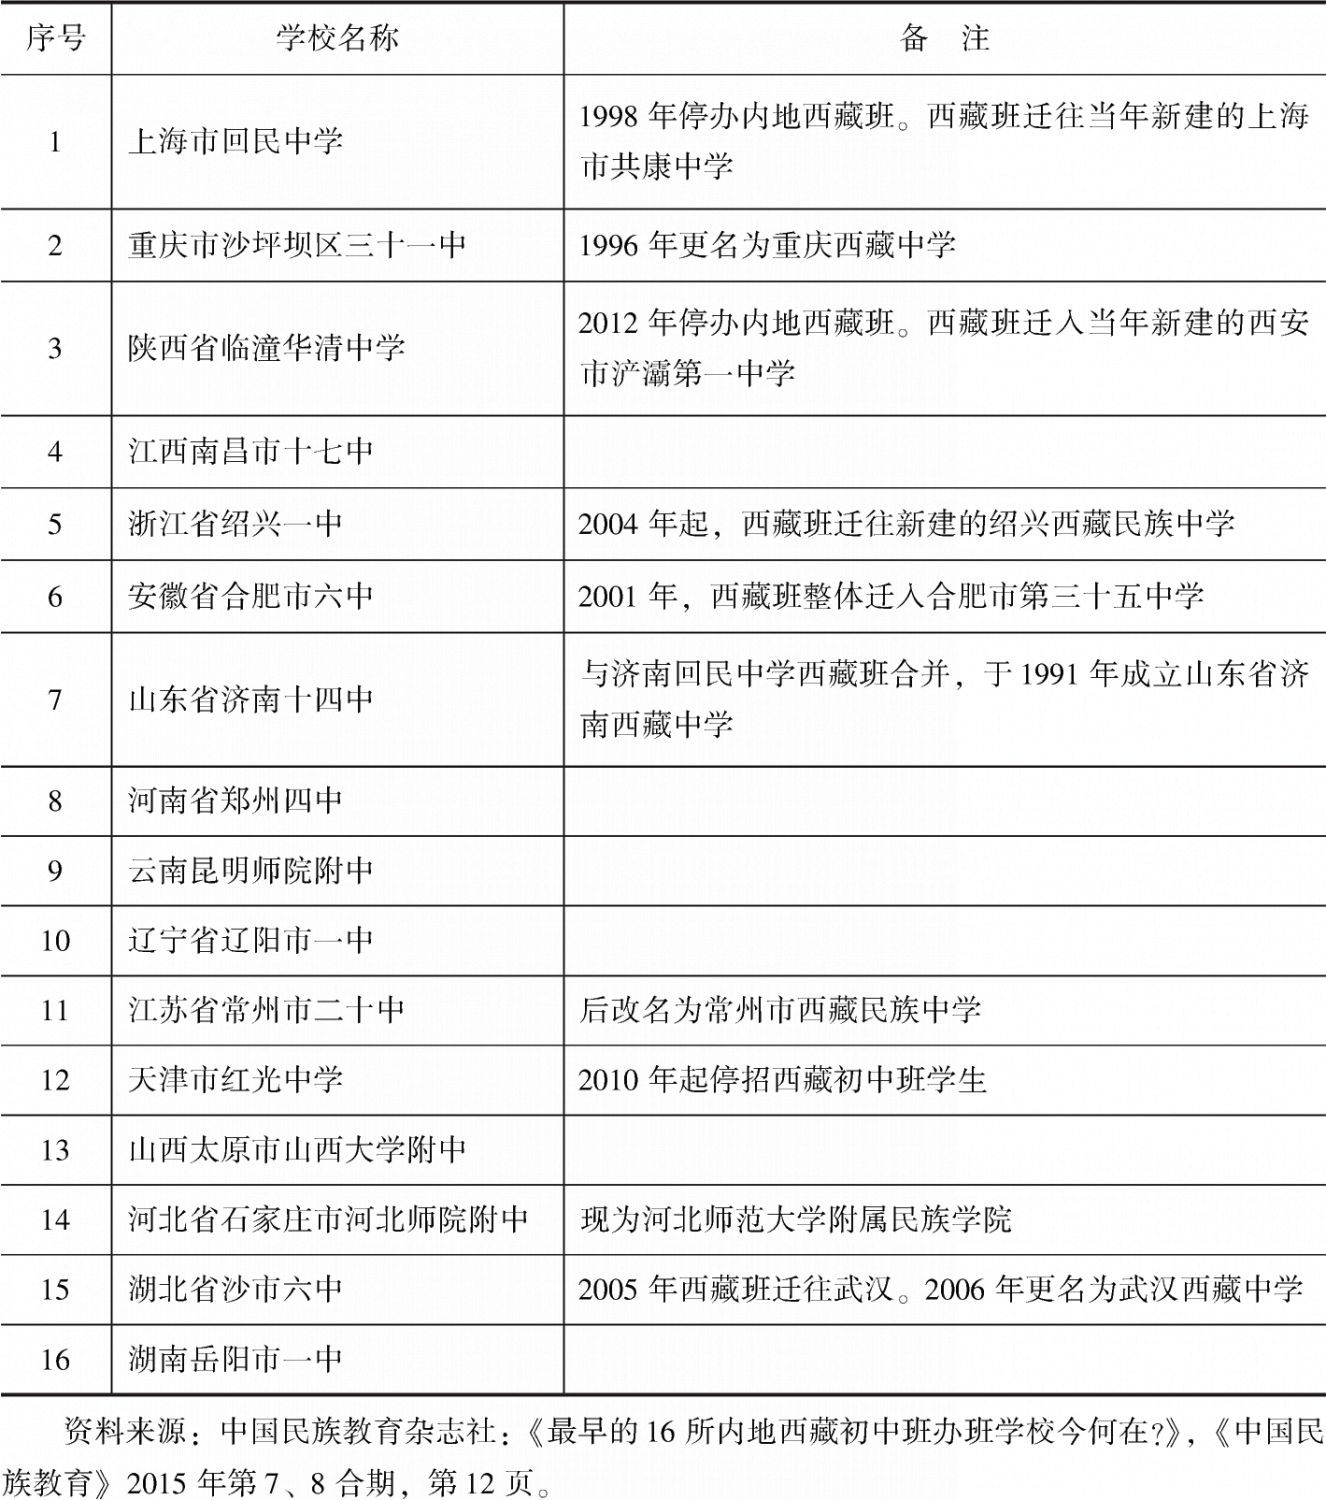 表1-1 内地西藏班首批16所学校基本情况